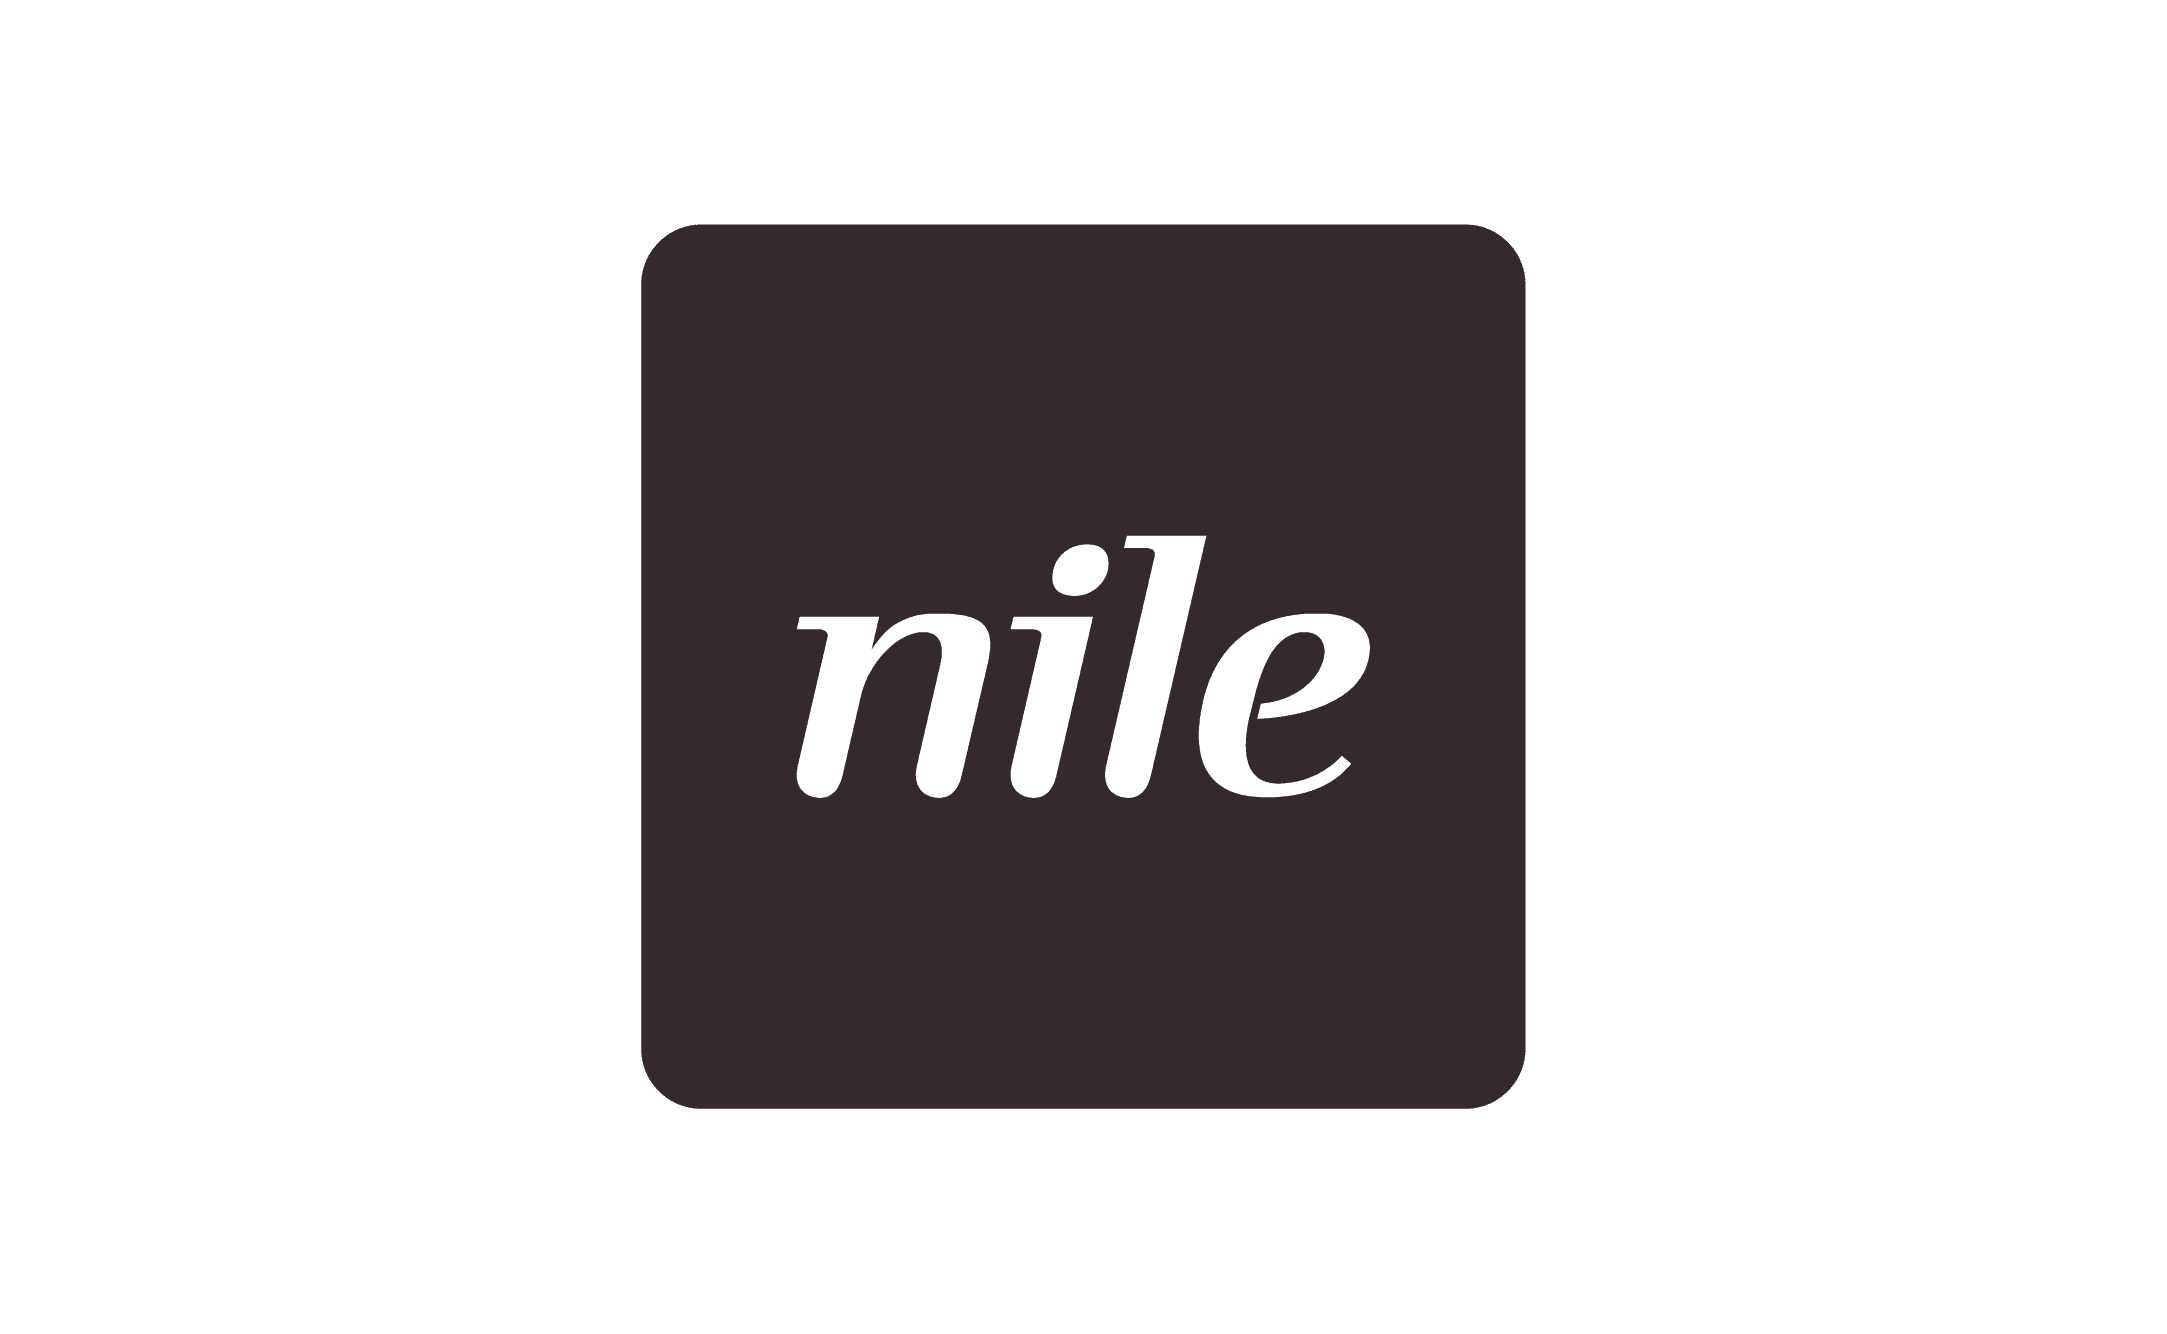 Nile HQ